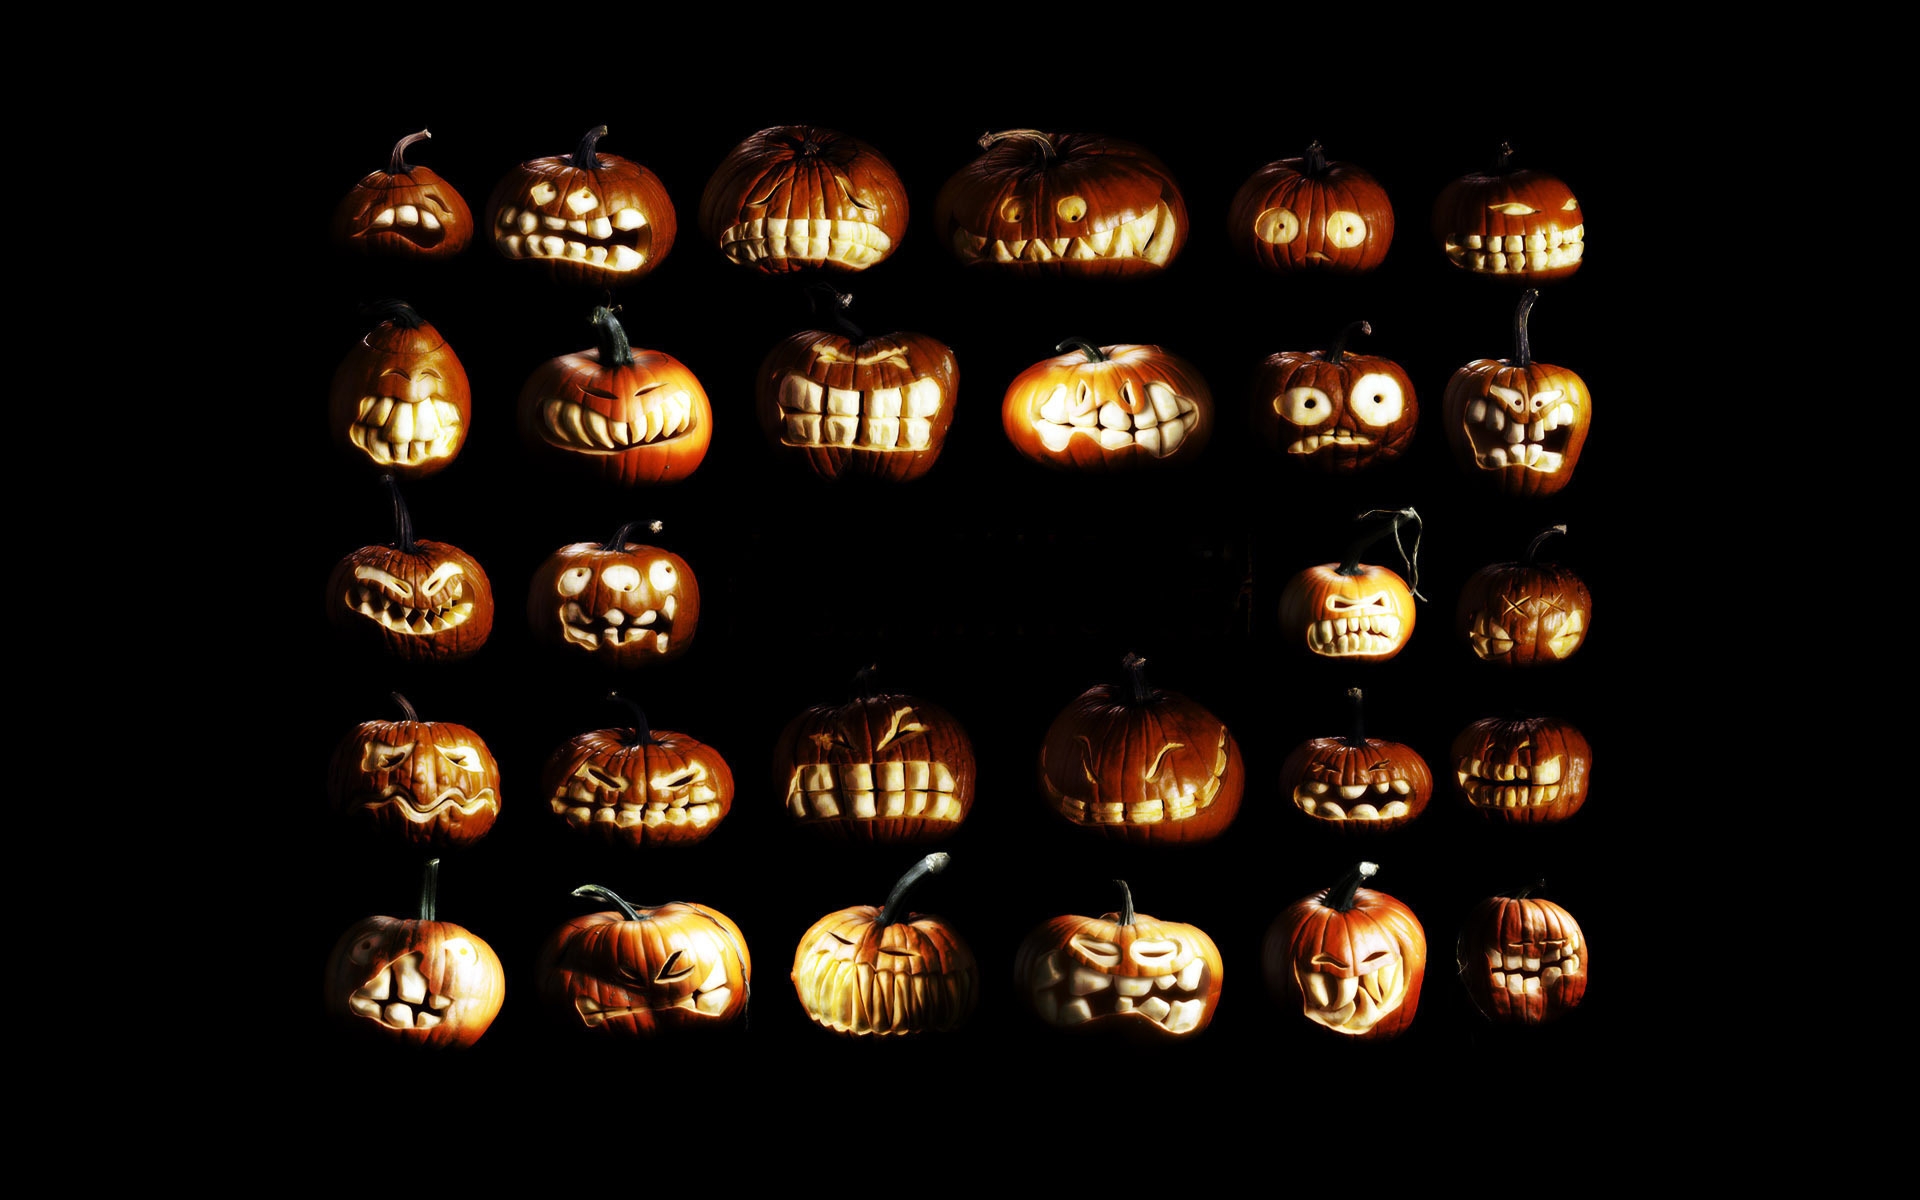 Pumpkin figures for Halloween for 1920 x 1200 widescreen resolution